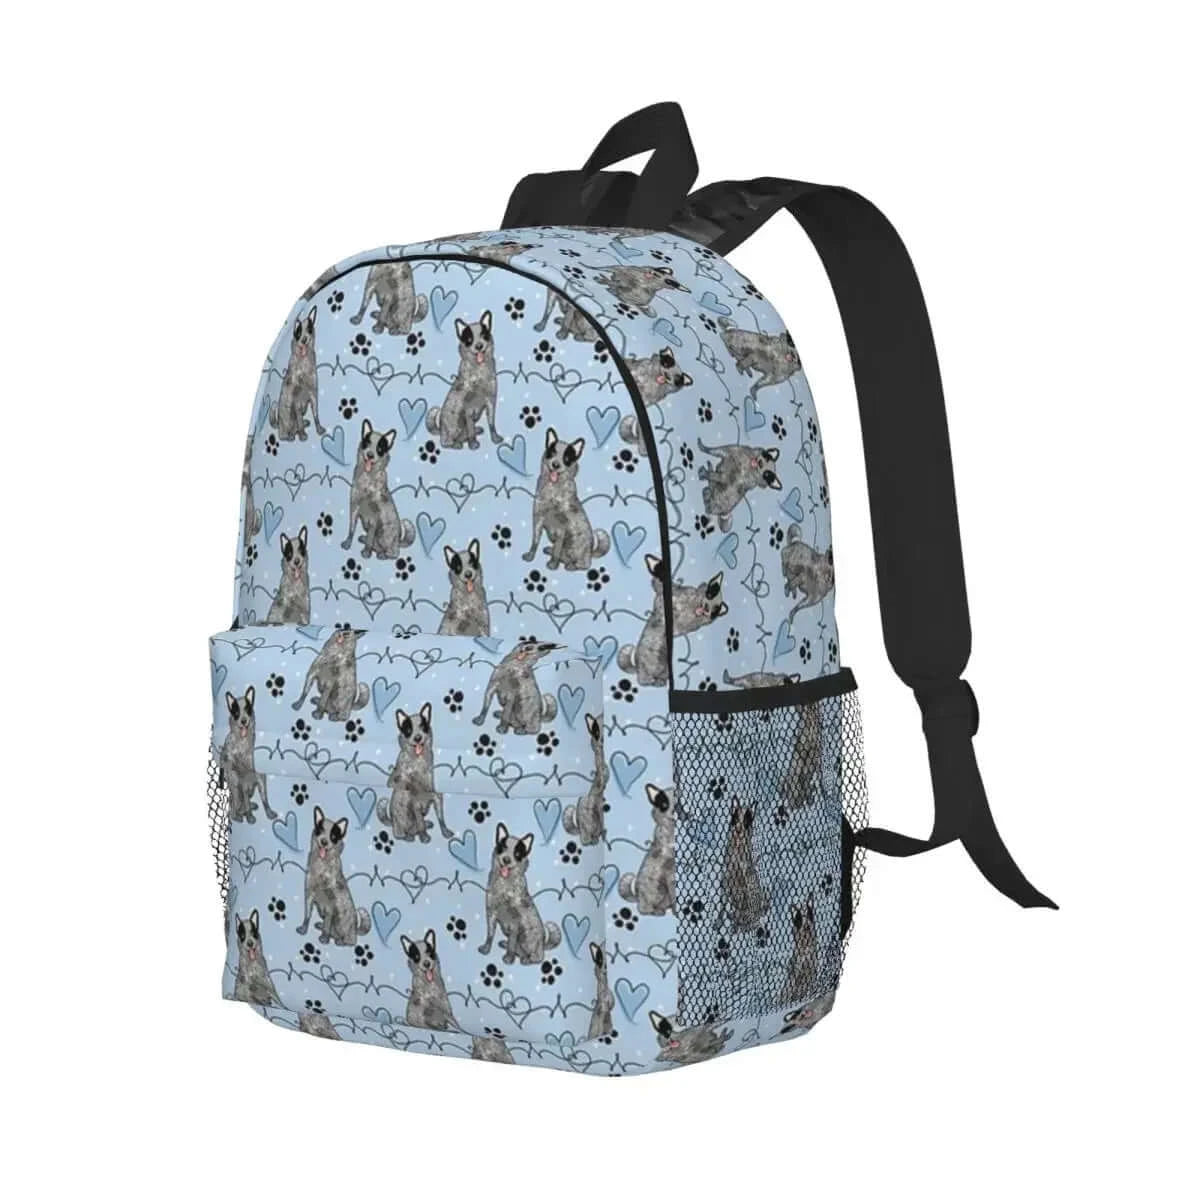 LOVE Blue Heeler Australian Cattle Dog Backpack